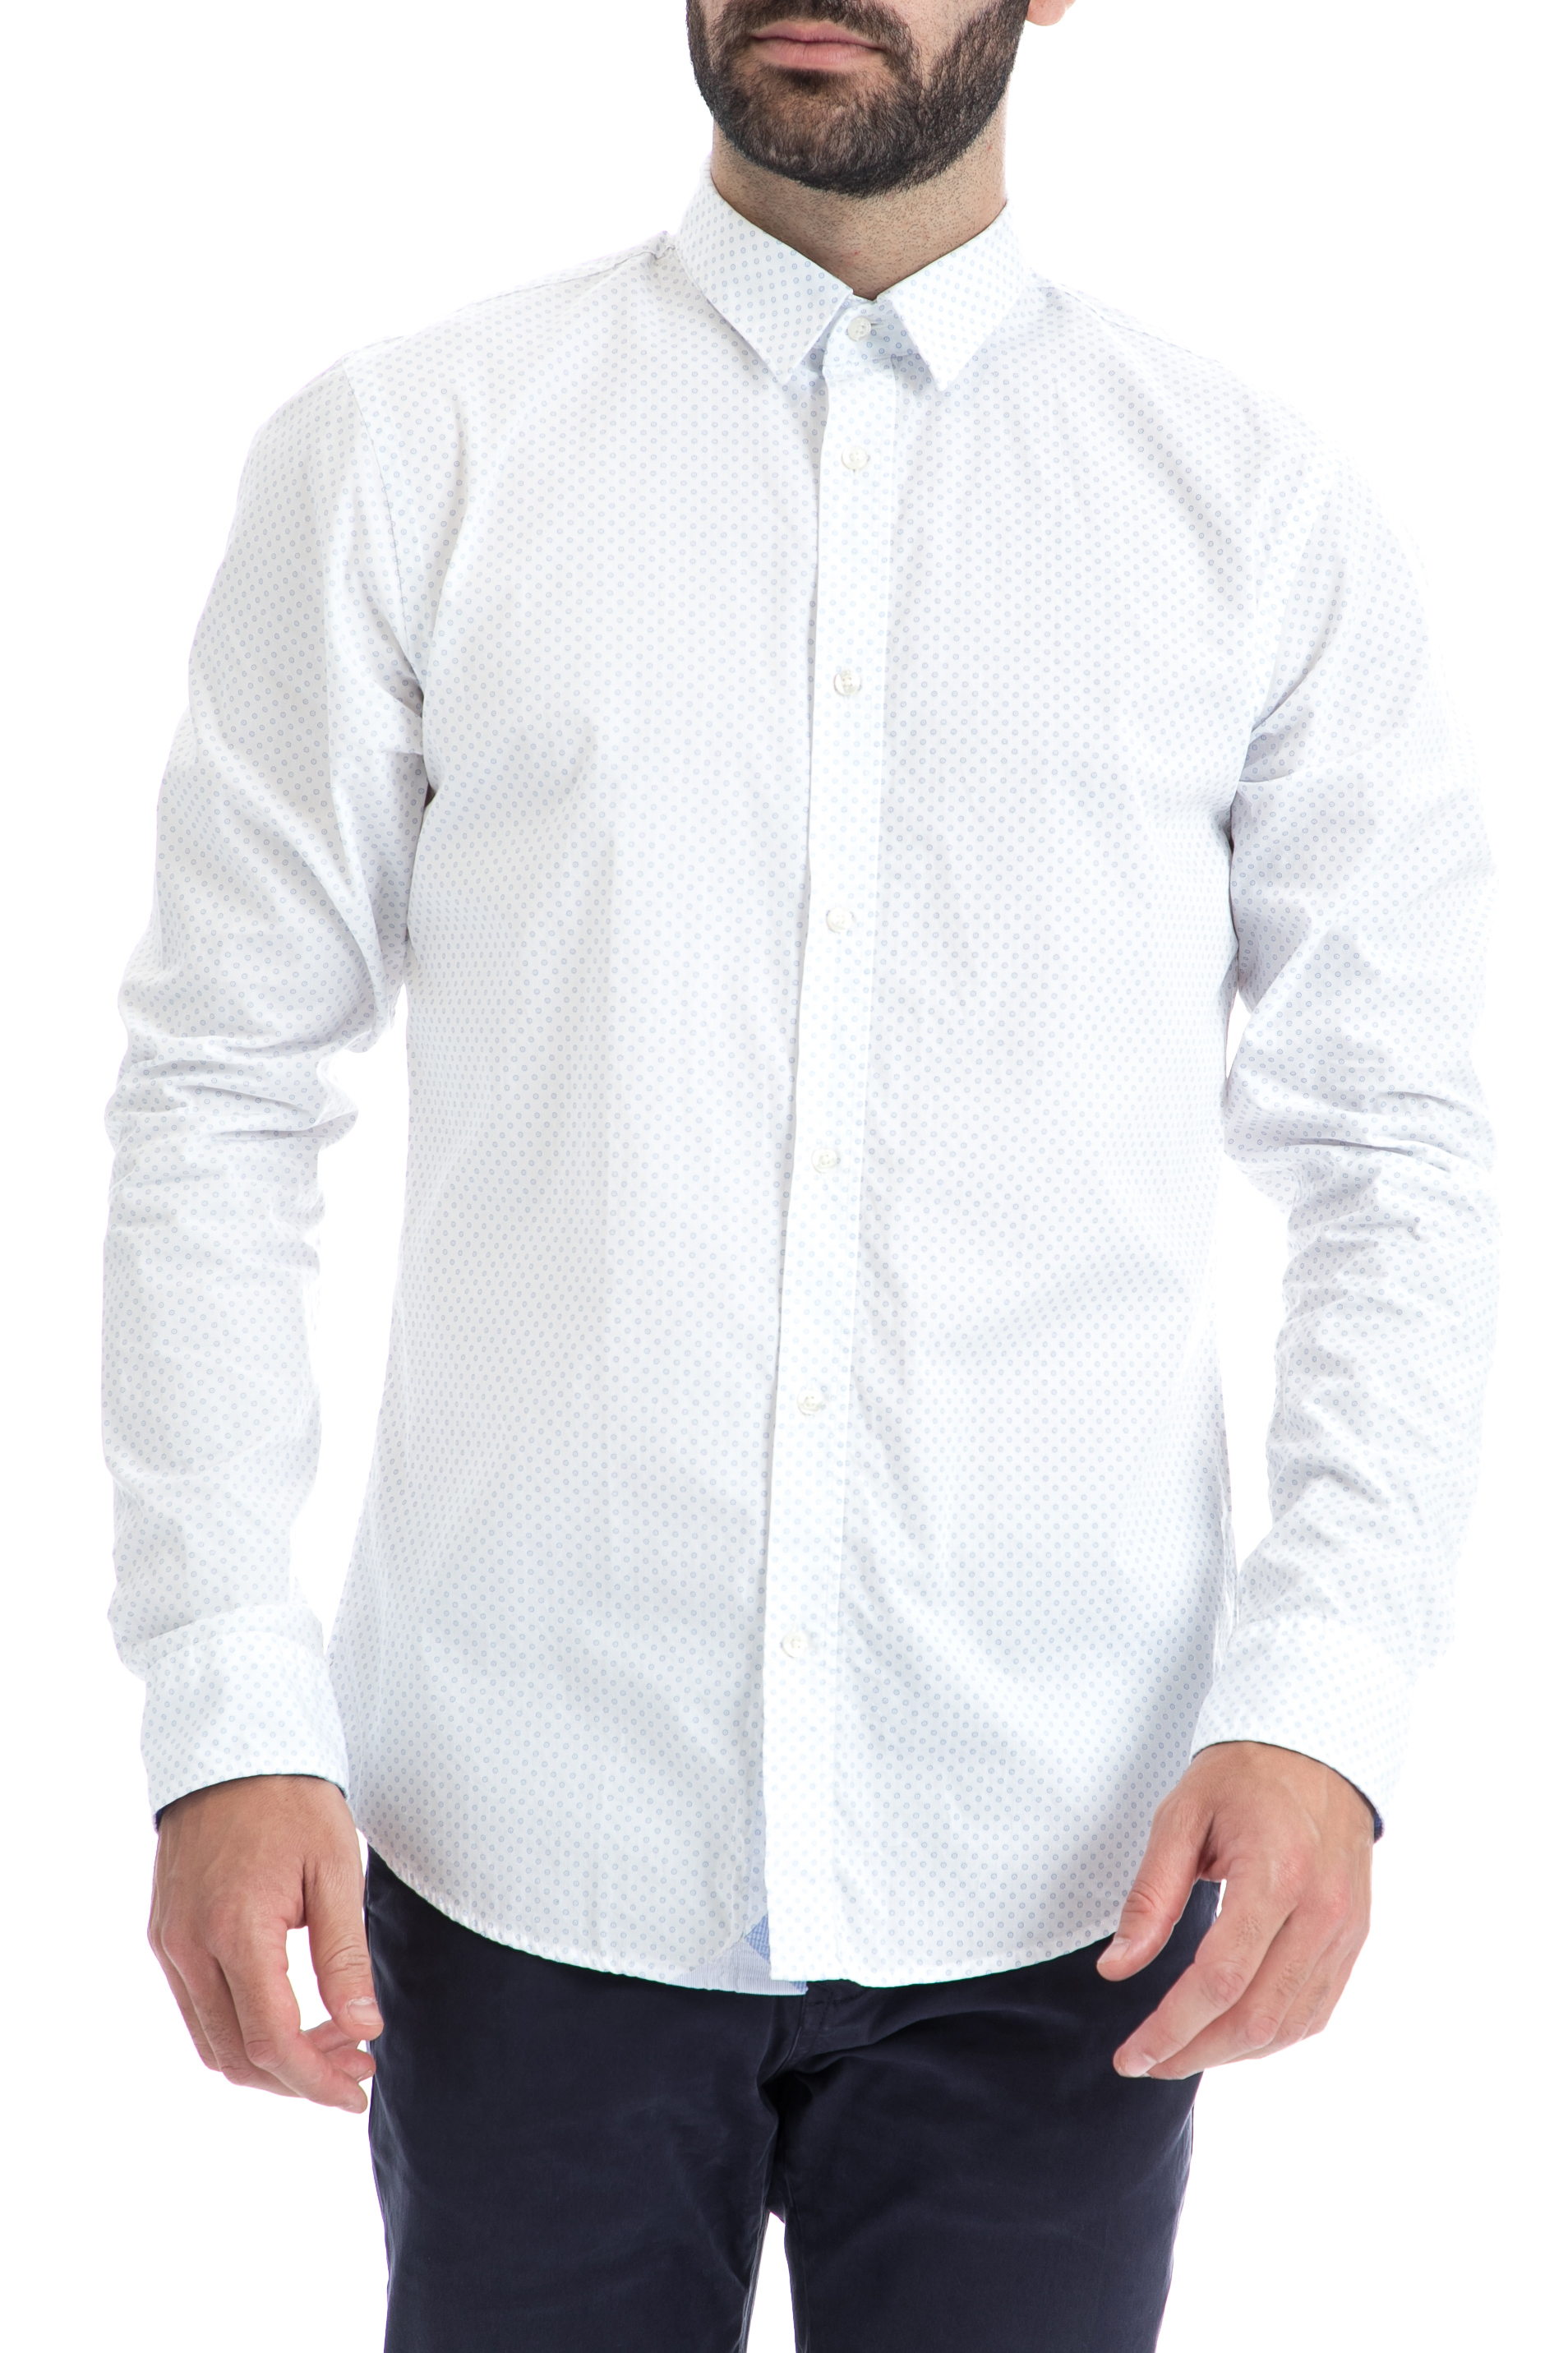 Ανδρικά/Ρούχα/Πουκάμισα/Μακρυμάνικα SCOTCH & SODA - Ανδρικό πουκάμισο SCOTCH & SODA λευκό